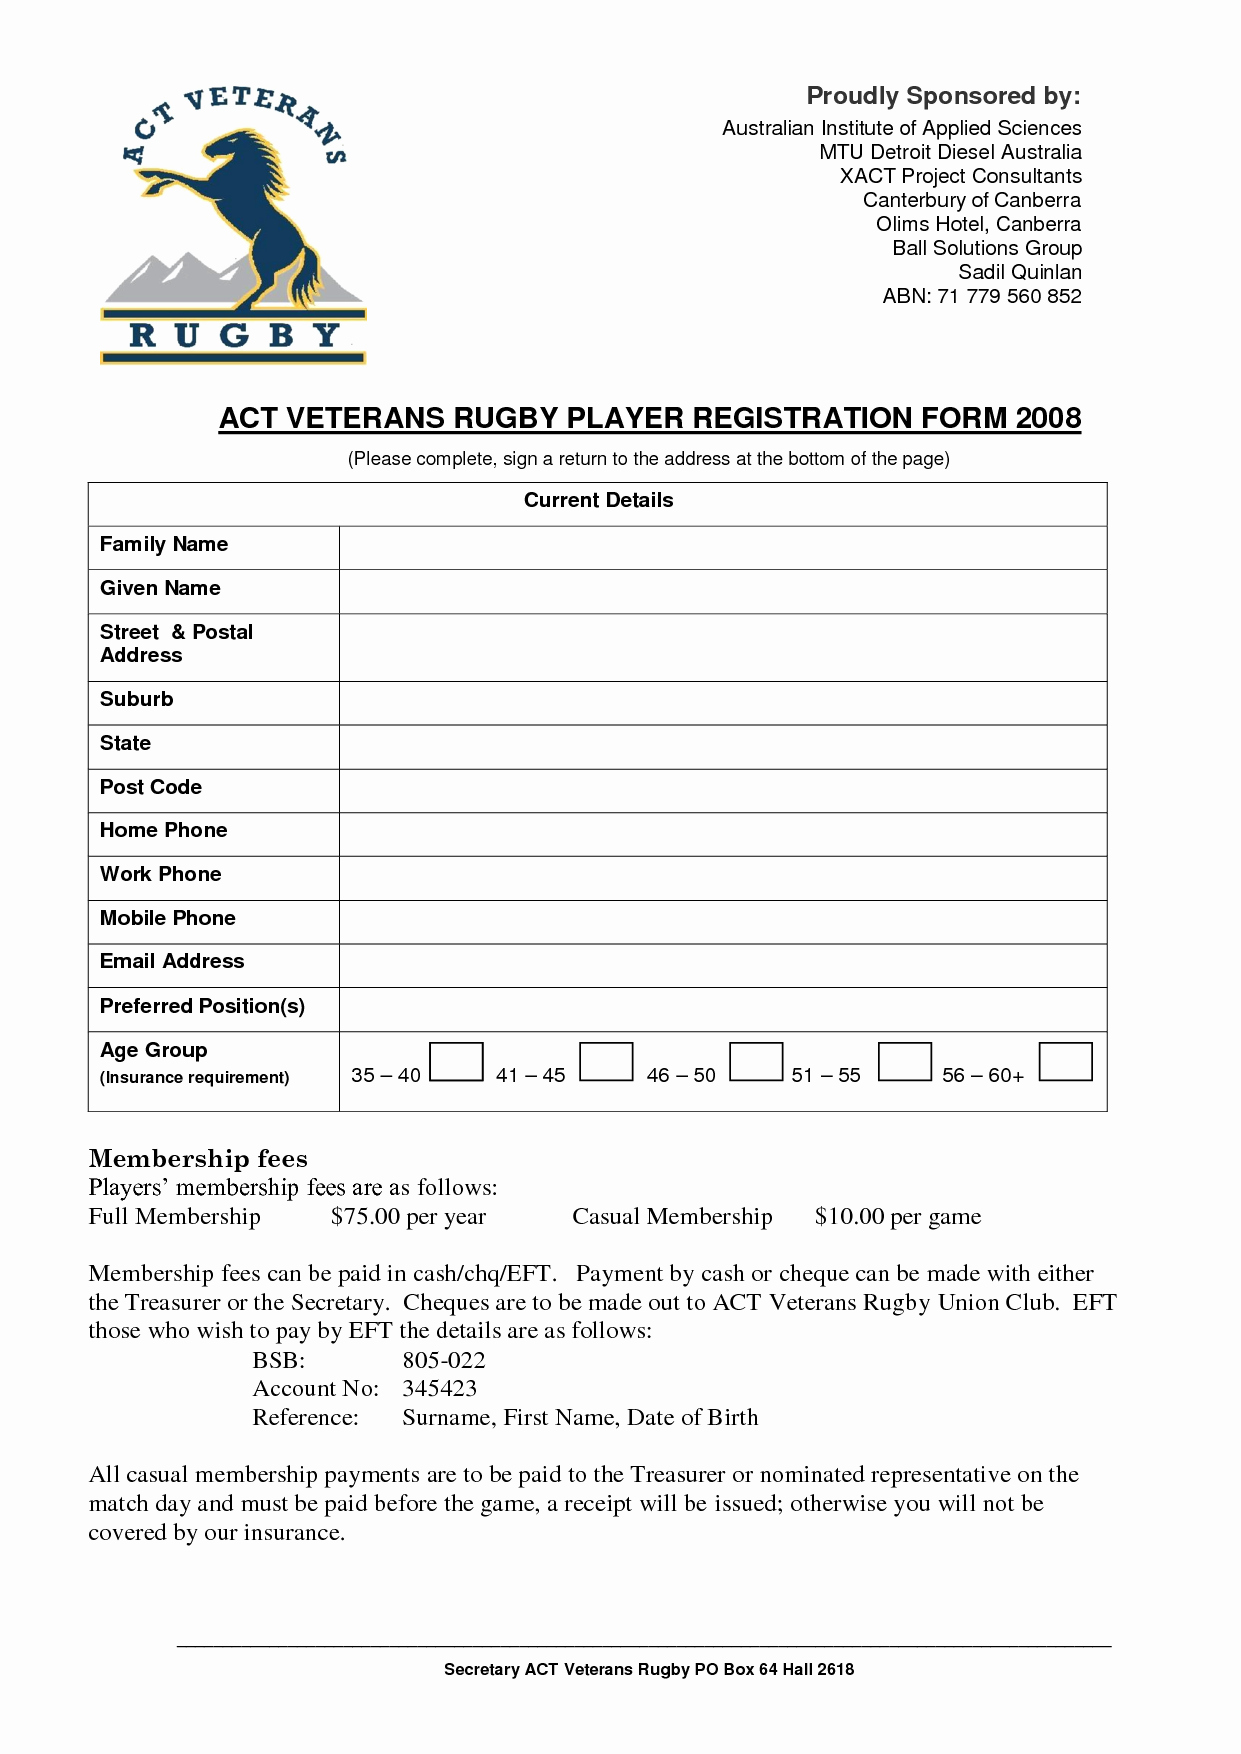 registration form template